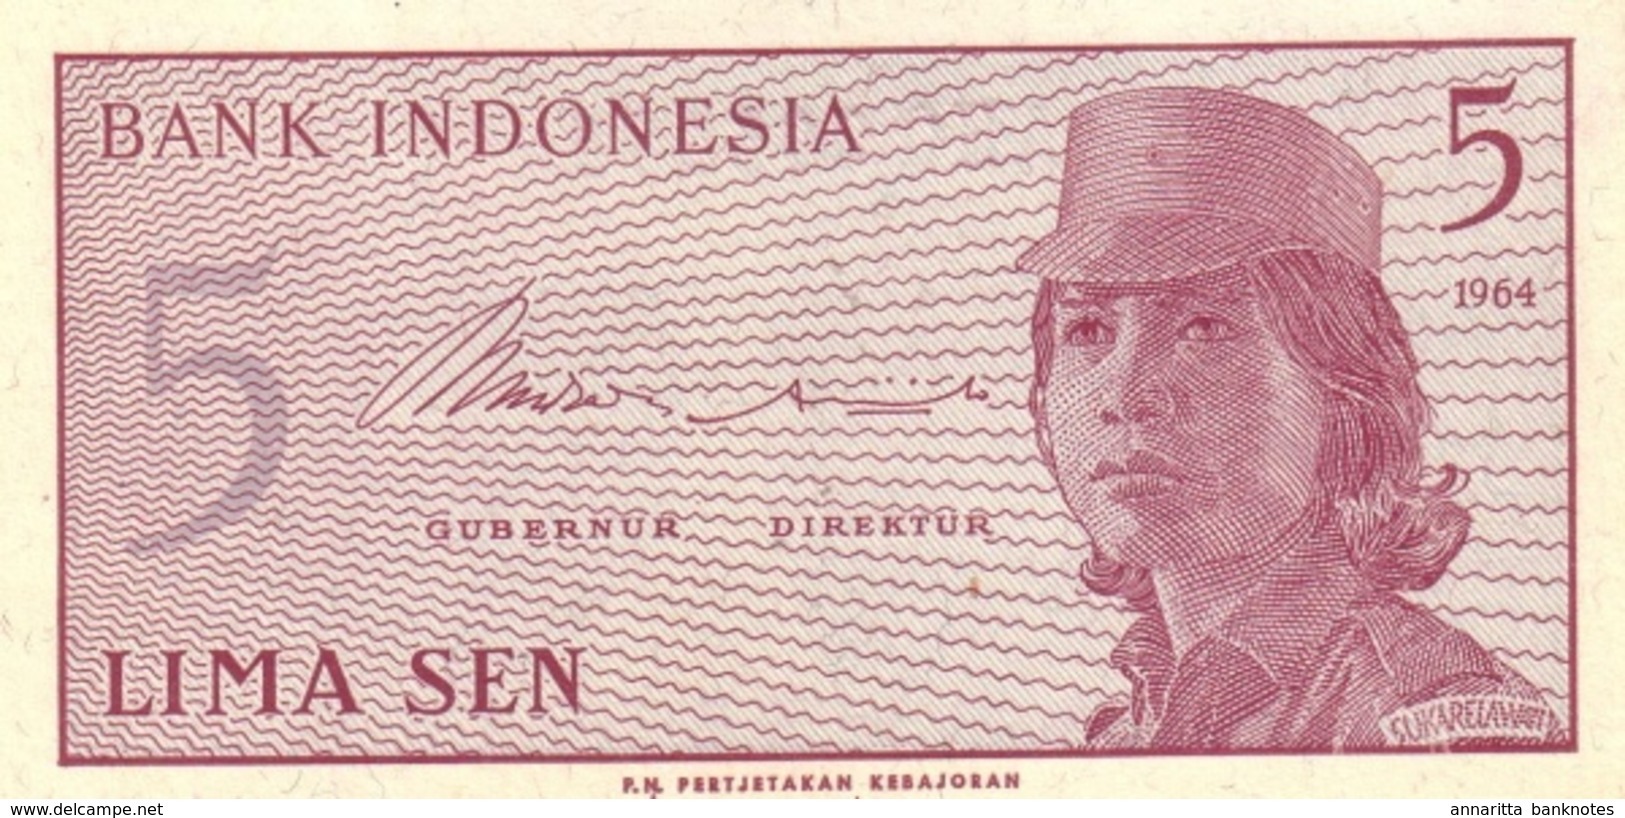 INDONESIA 5 SEN 1964 P-91 UNC  [ID544a] - Indonesien